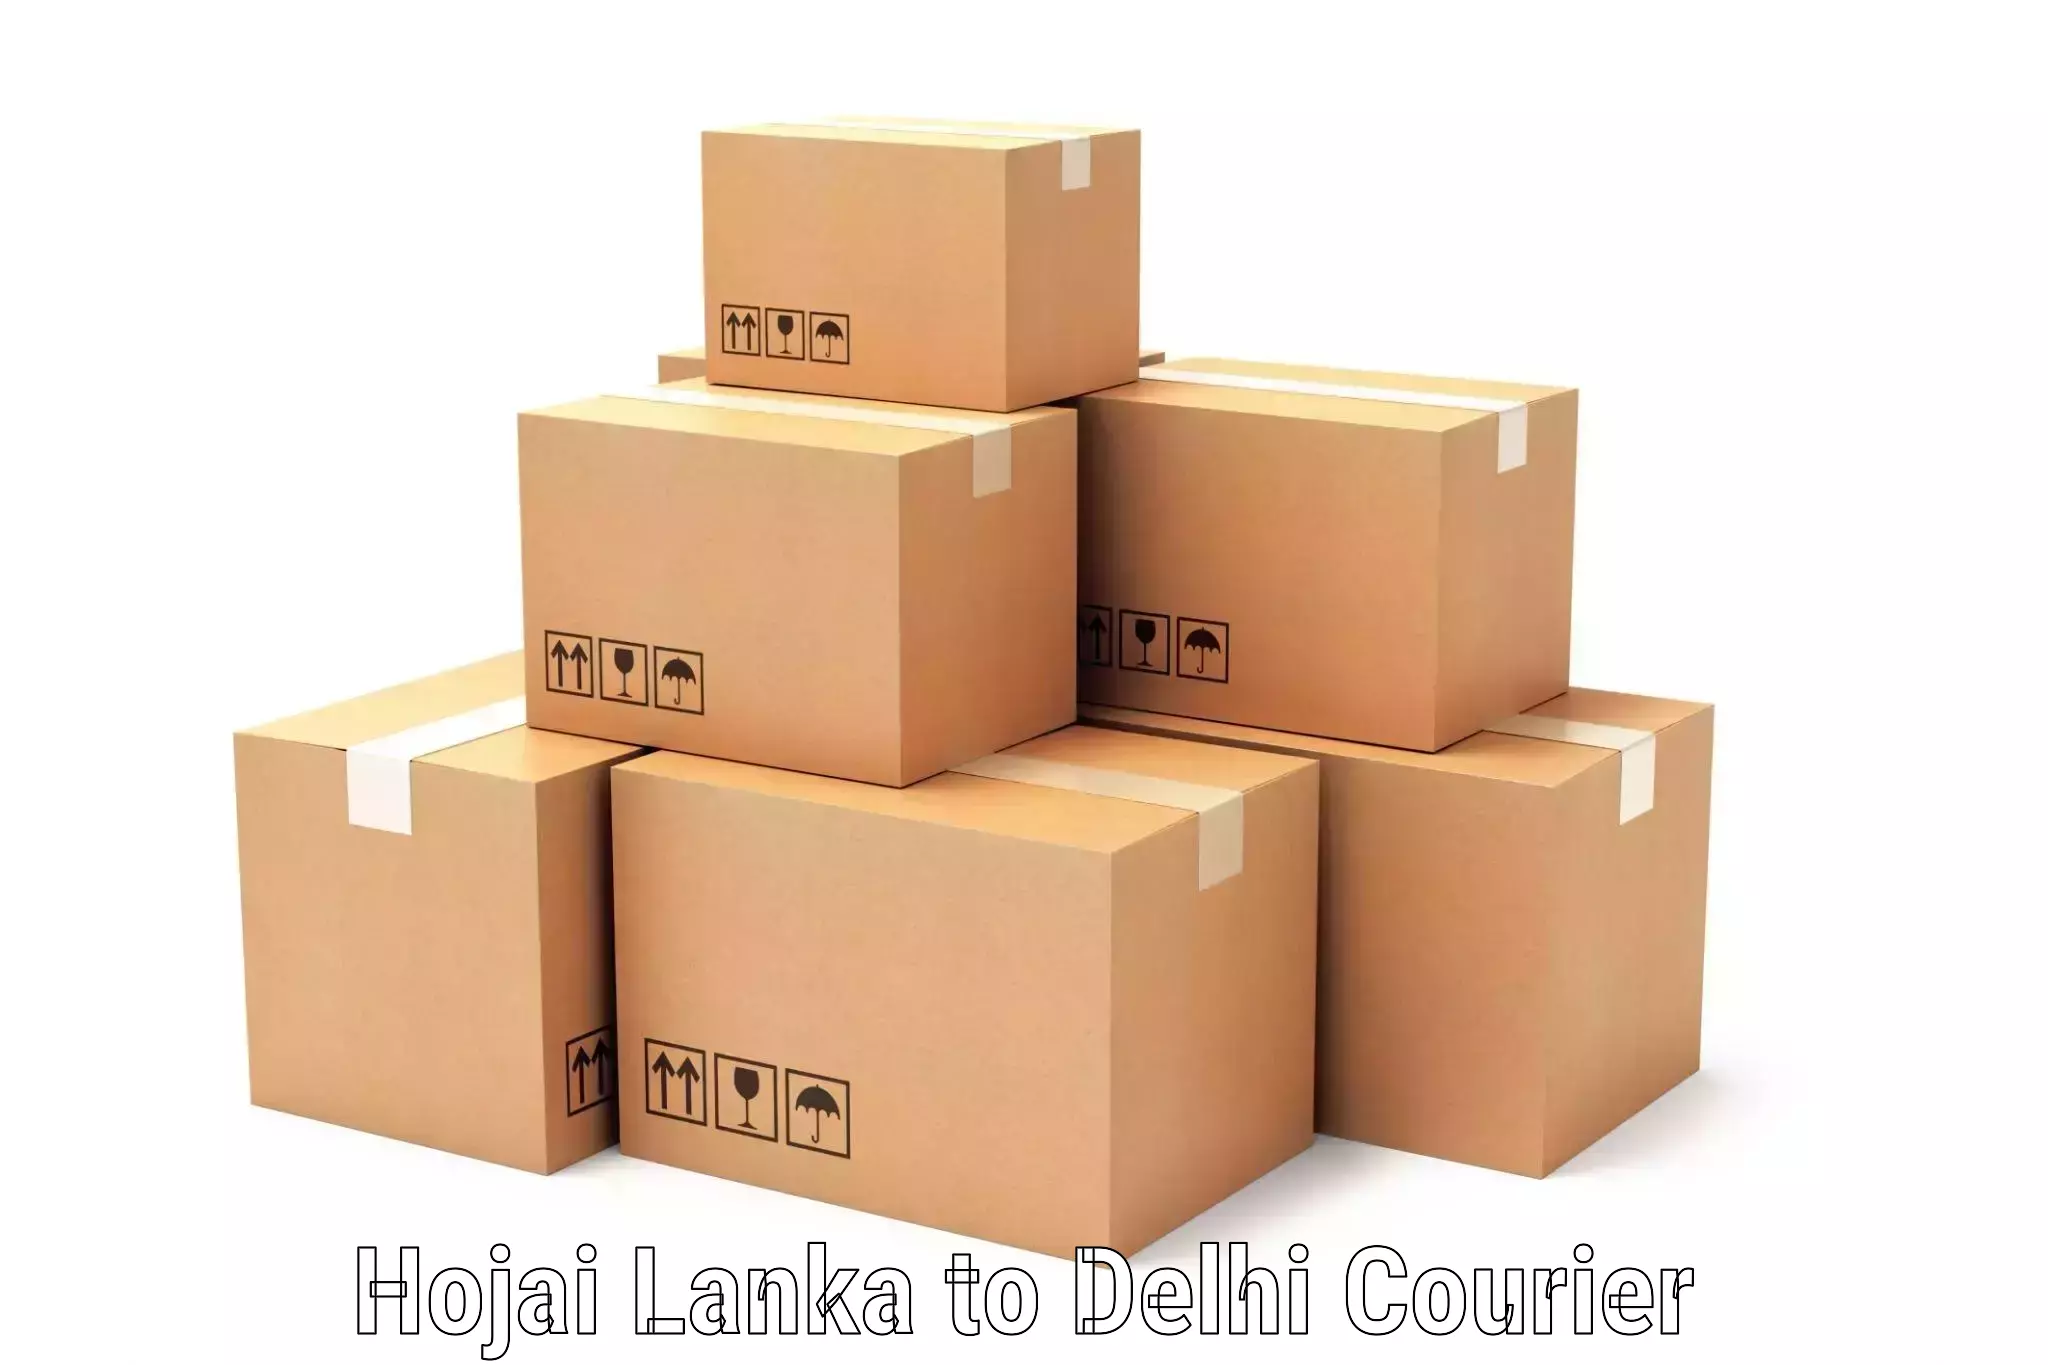 Express courier capabilities Hojai Lanka to Jamia Hamdard New Delhi